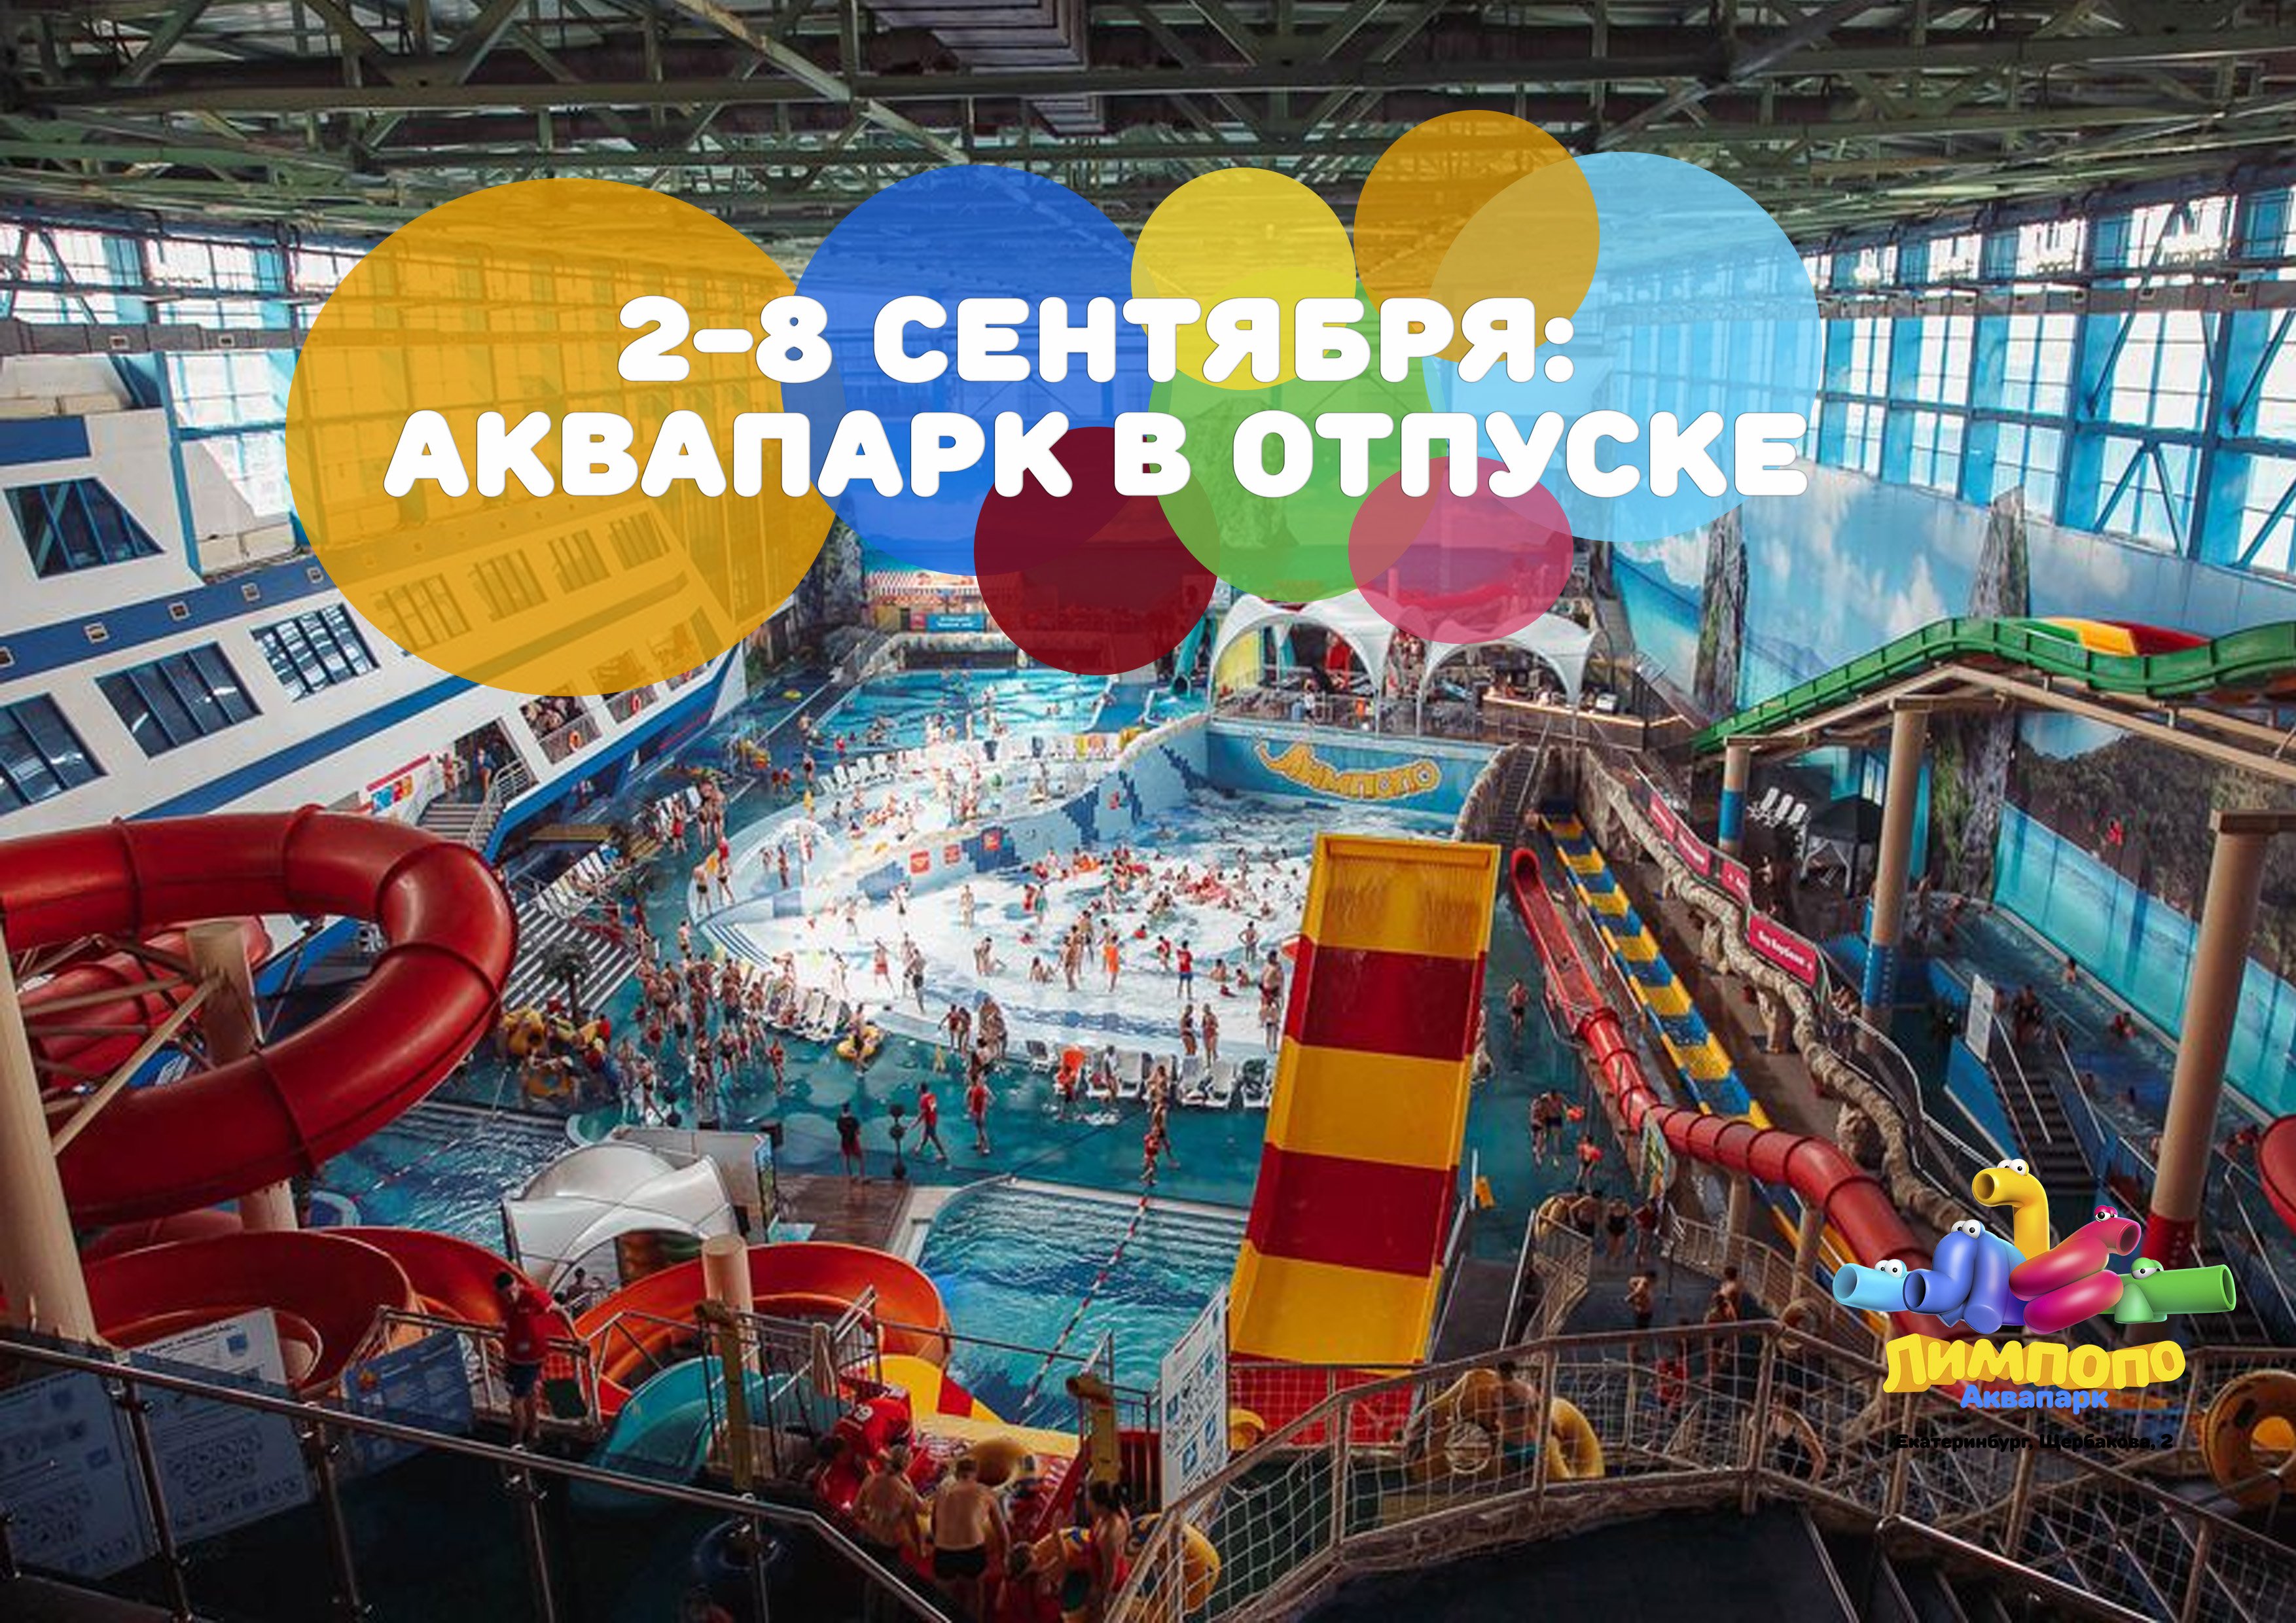 аквапарк в оренбурге официальный сайт